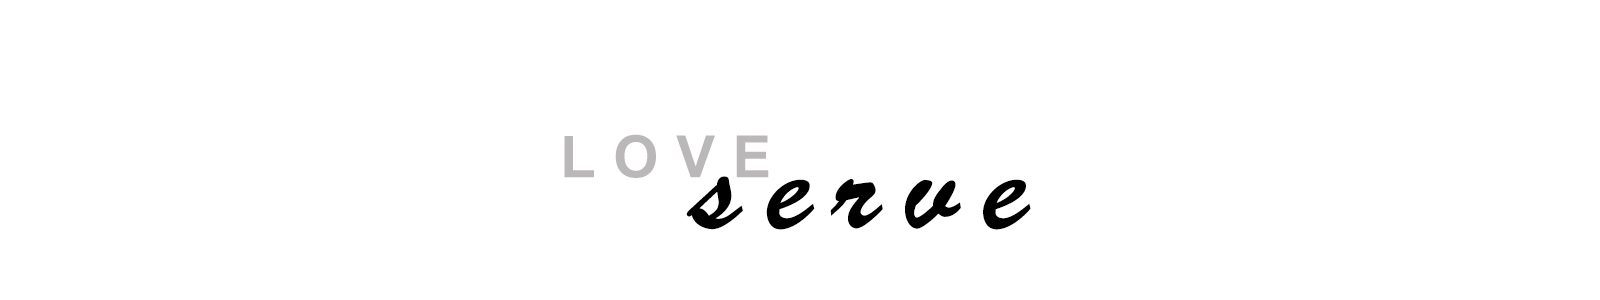 love serve